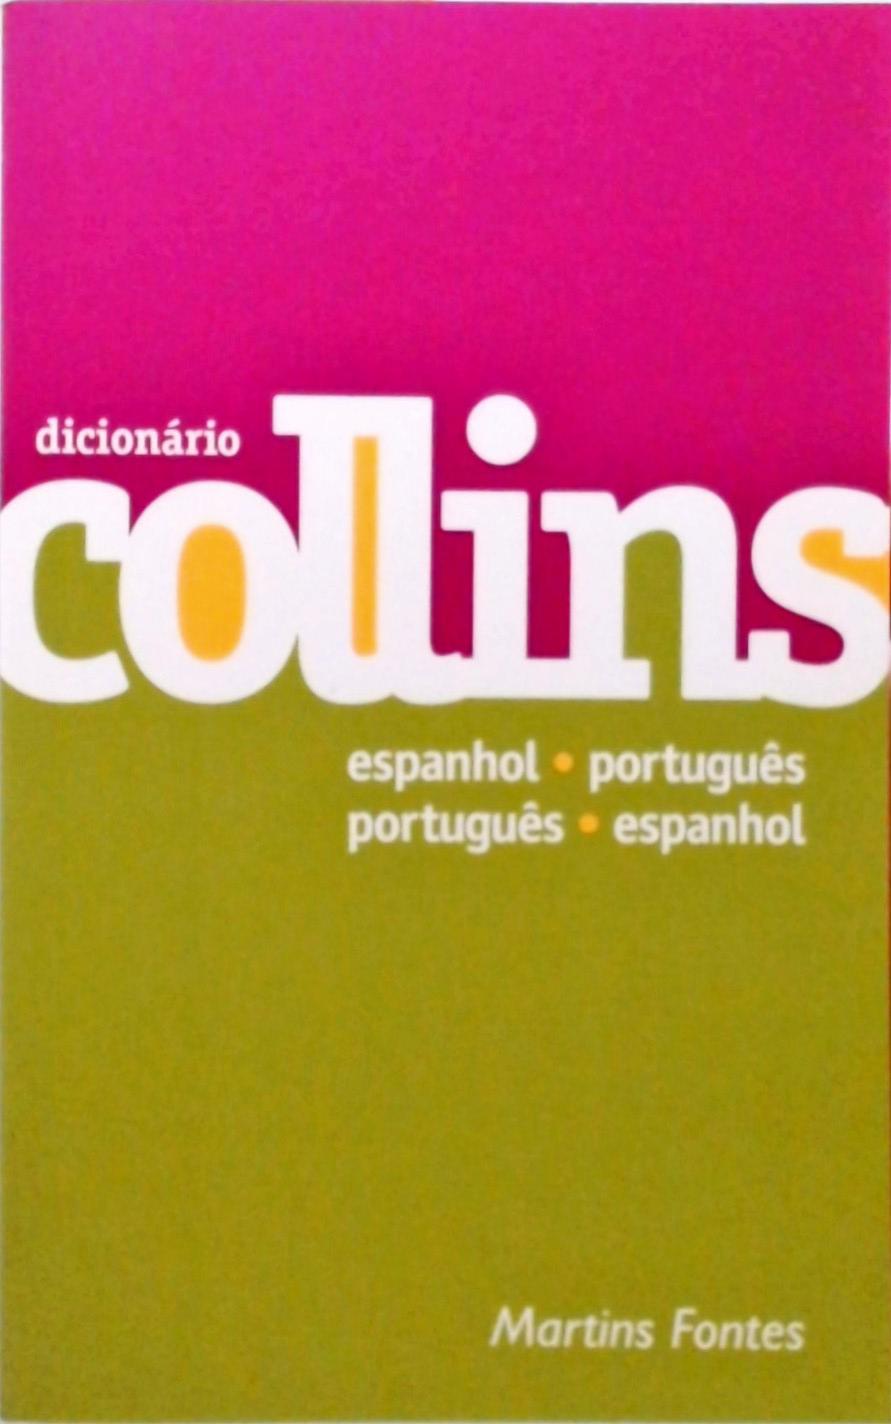 Dicionário Collins Espanhol-Português Português-Espanhol